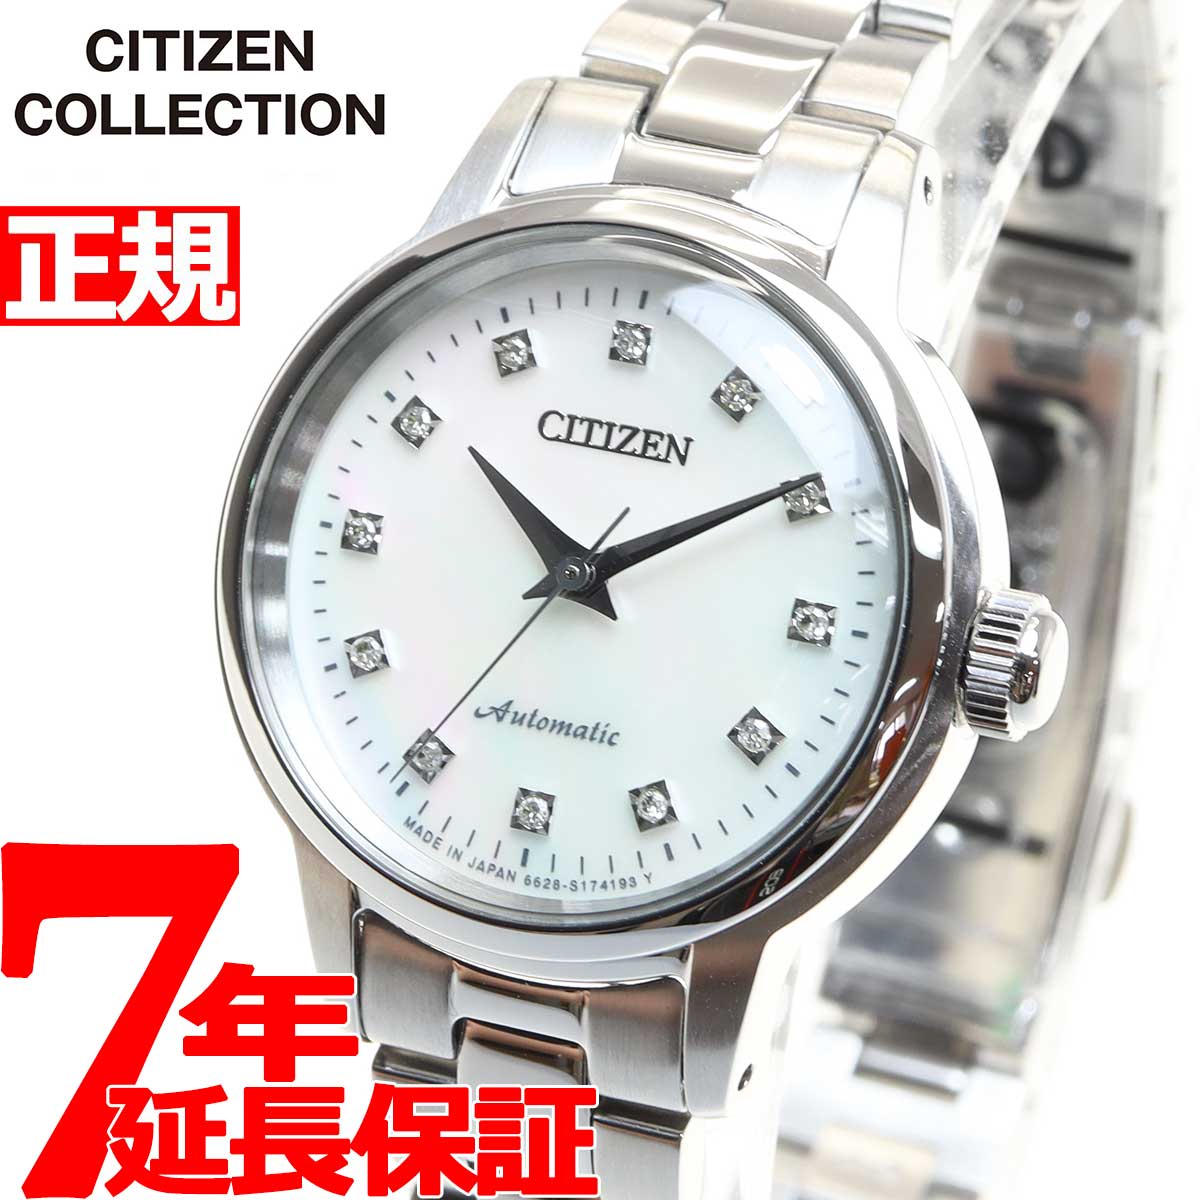 シチズンコレクション レディース 腕時計 メカニカル 日本製 自動巻き PR1030-57D CITIZEN COLLECTION ホワイトシェル